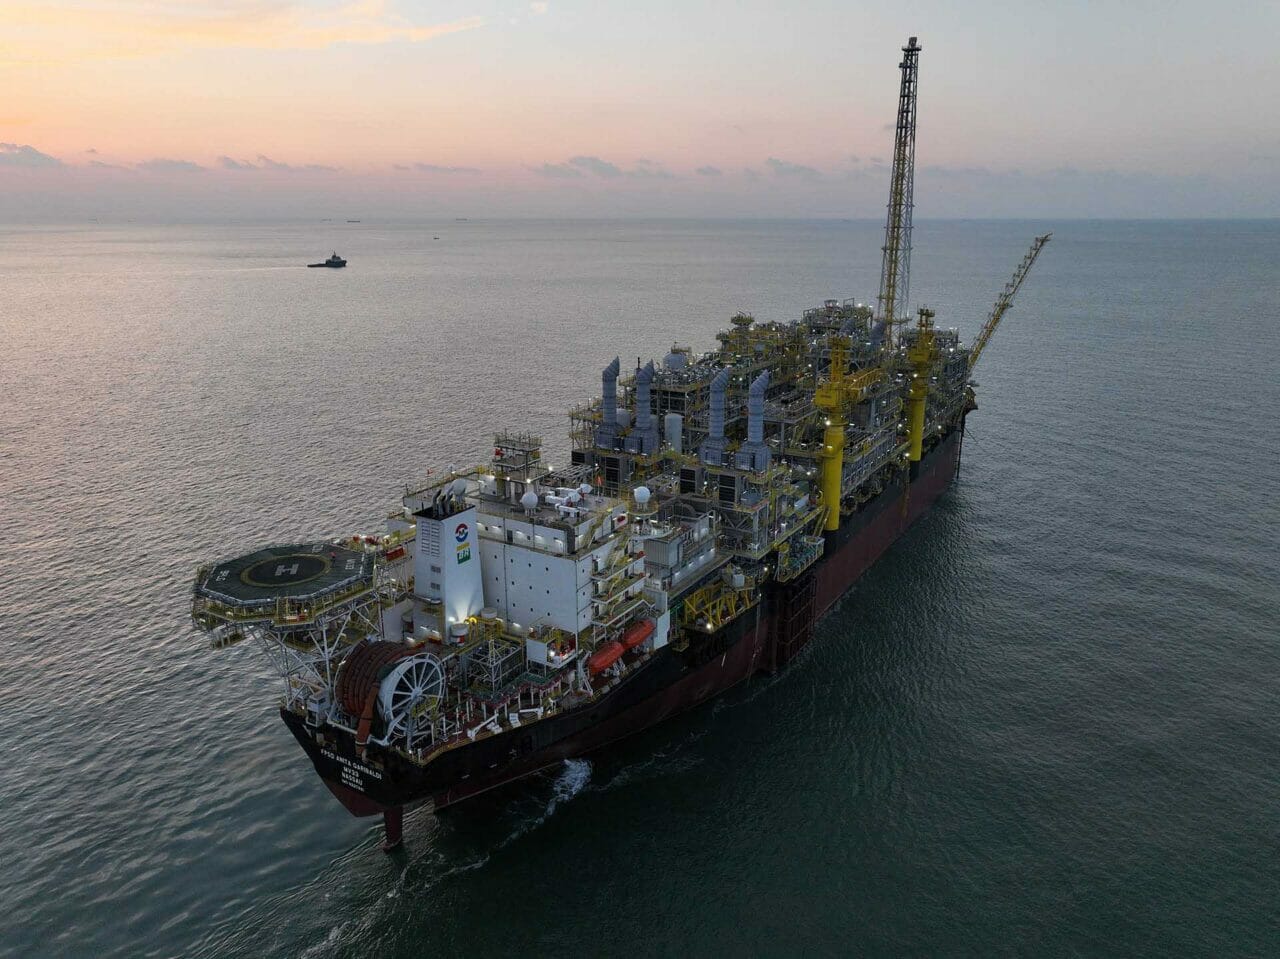 Somente a Petrobras tem planos de investimentos de US$ 18 bilhões na região da Bacia de Campos. O novo relatório da Firjan aponta para crescimento de projetos offshore nos campos da área.